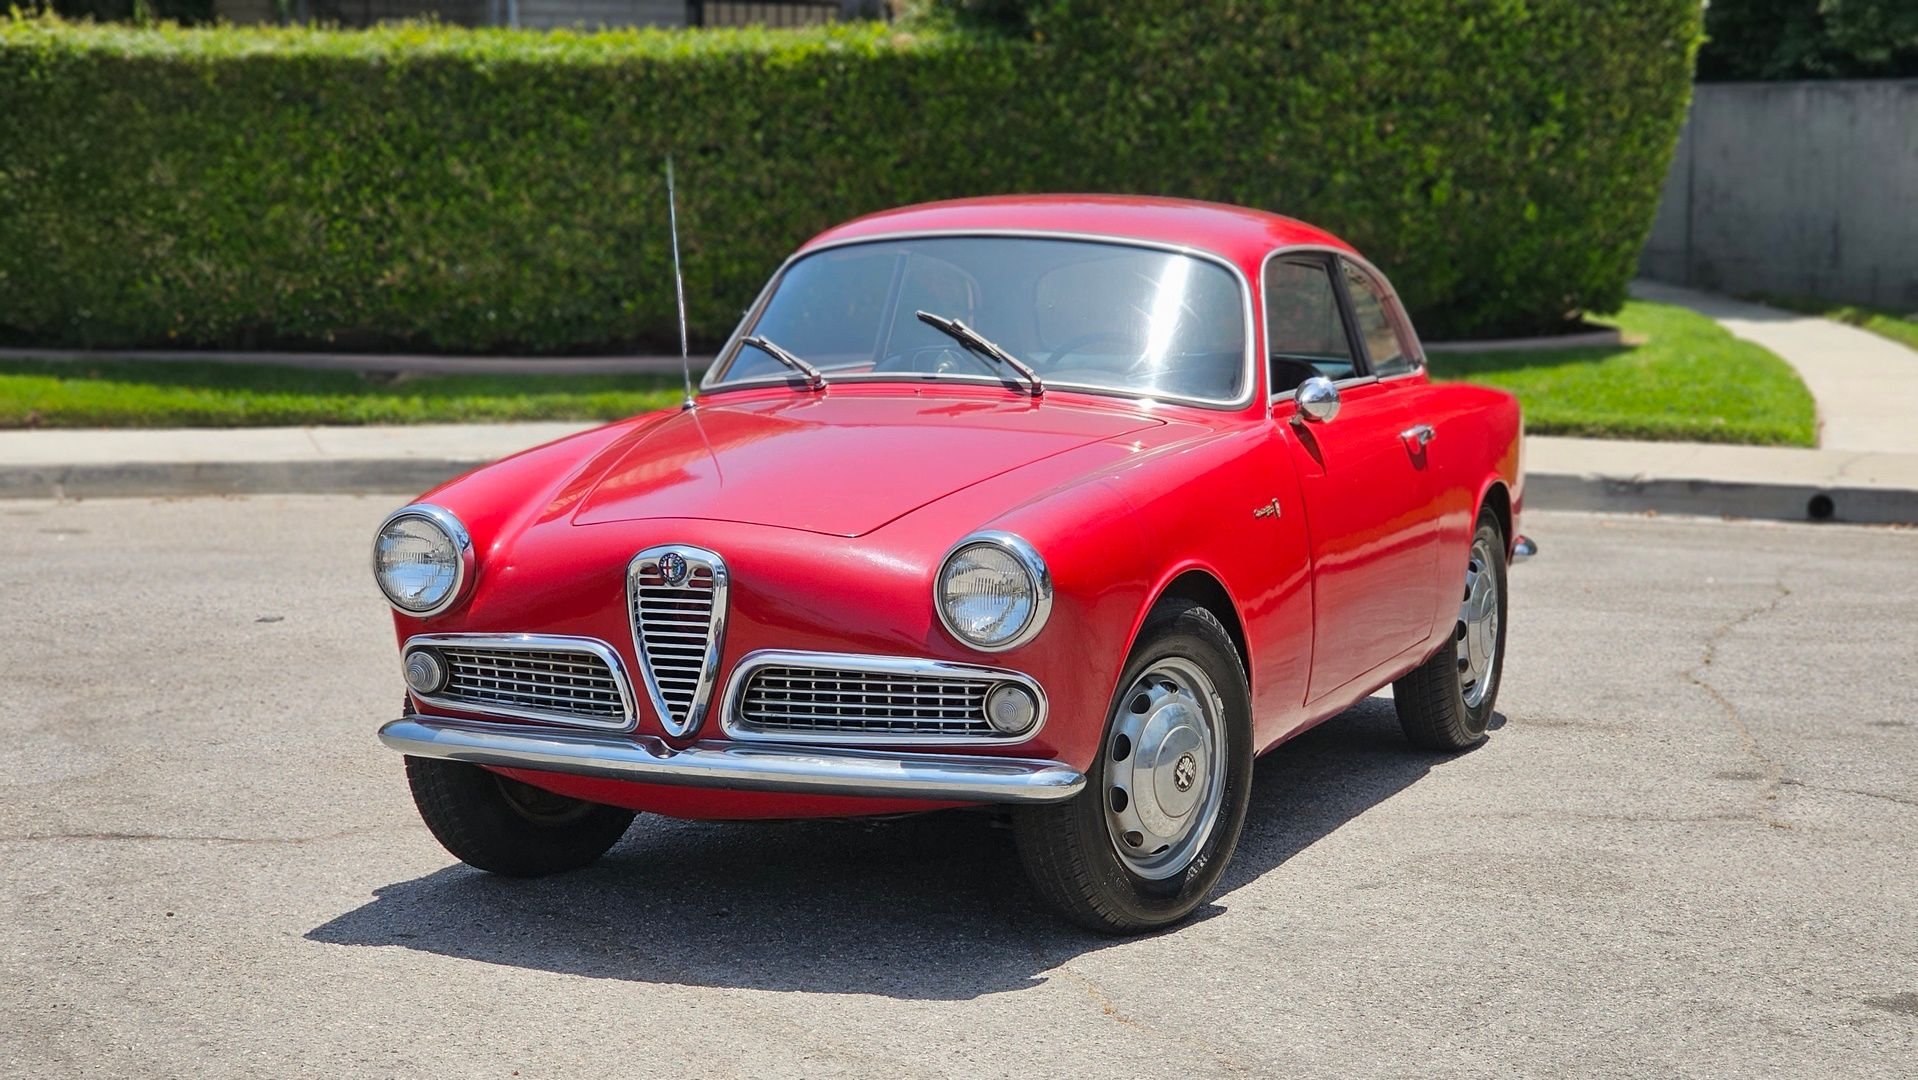 Alfa Romeo Giulietta: Alfa Romeo Giulietta Price & Specs